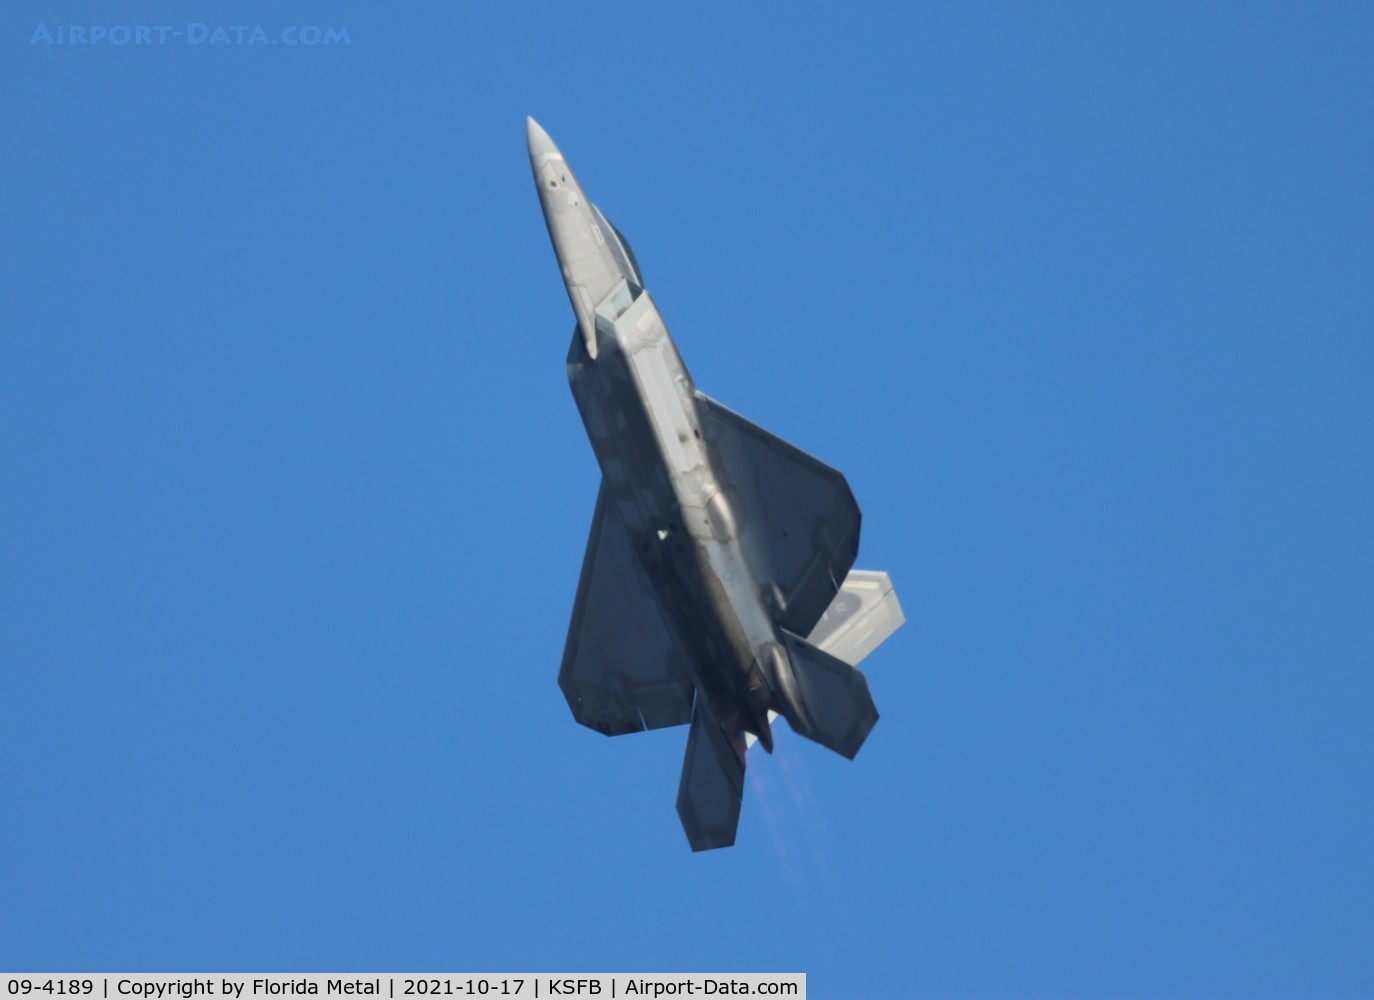 09-4189, 2009 Lockheed Martin F-22A Raptor C/N 645-4189, Sanford 2021